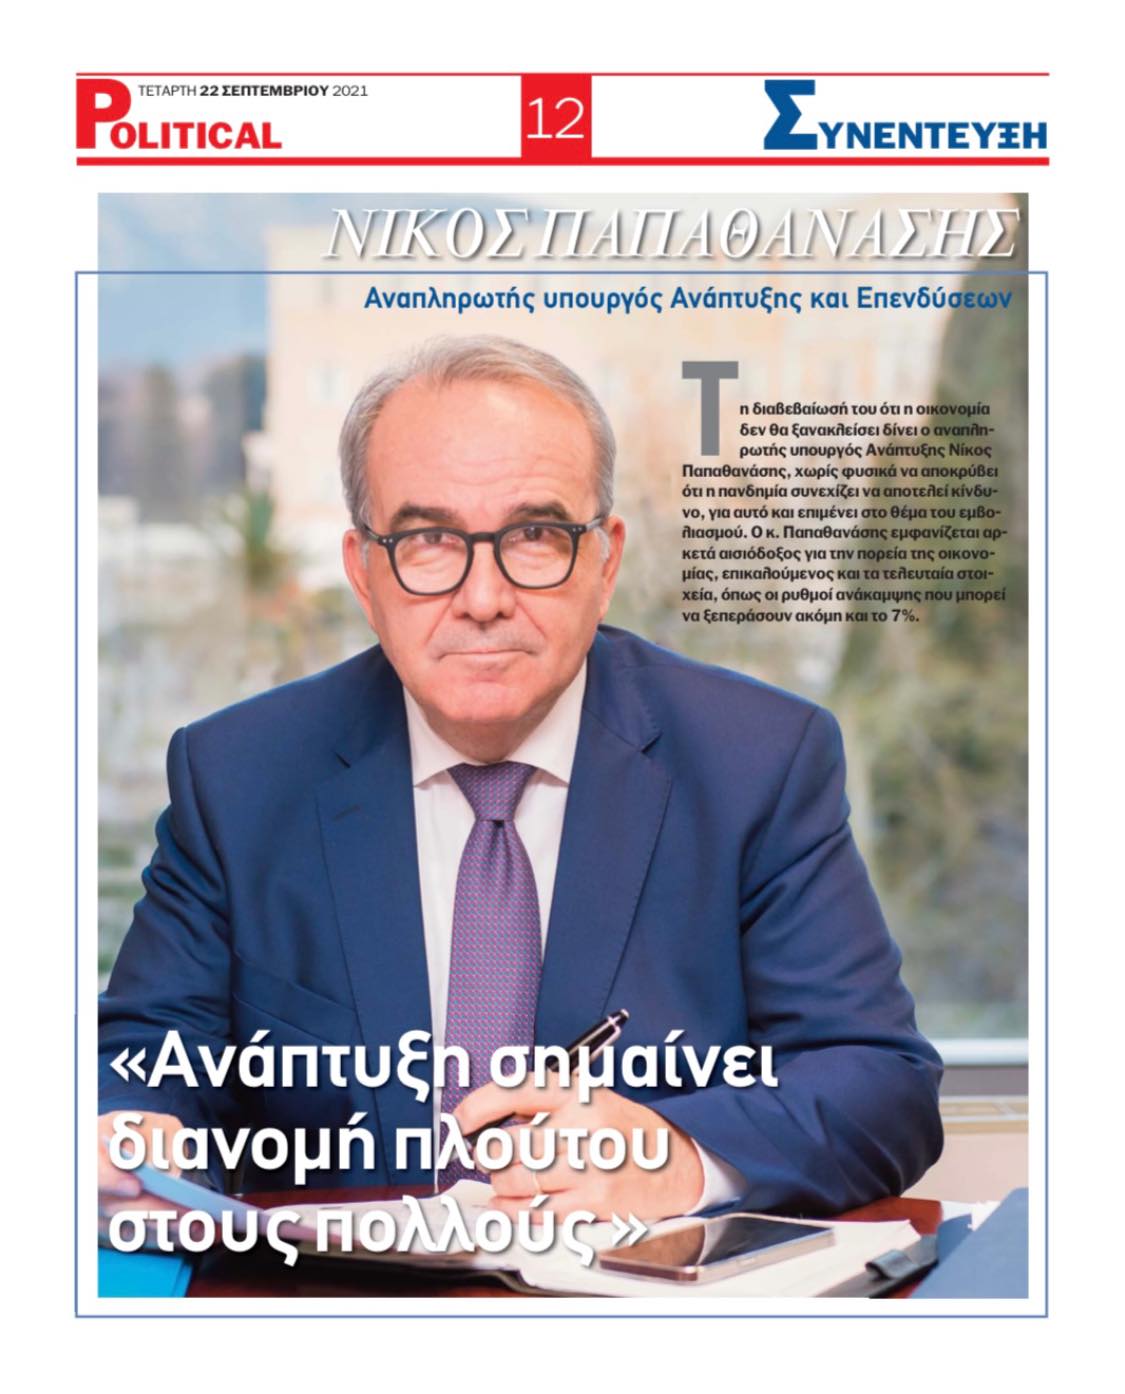 Συνέντευξη στην ηλεκτρονική εφημερίδα Political.gr